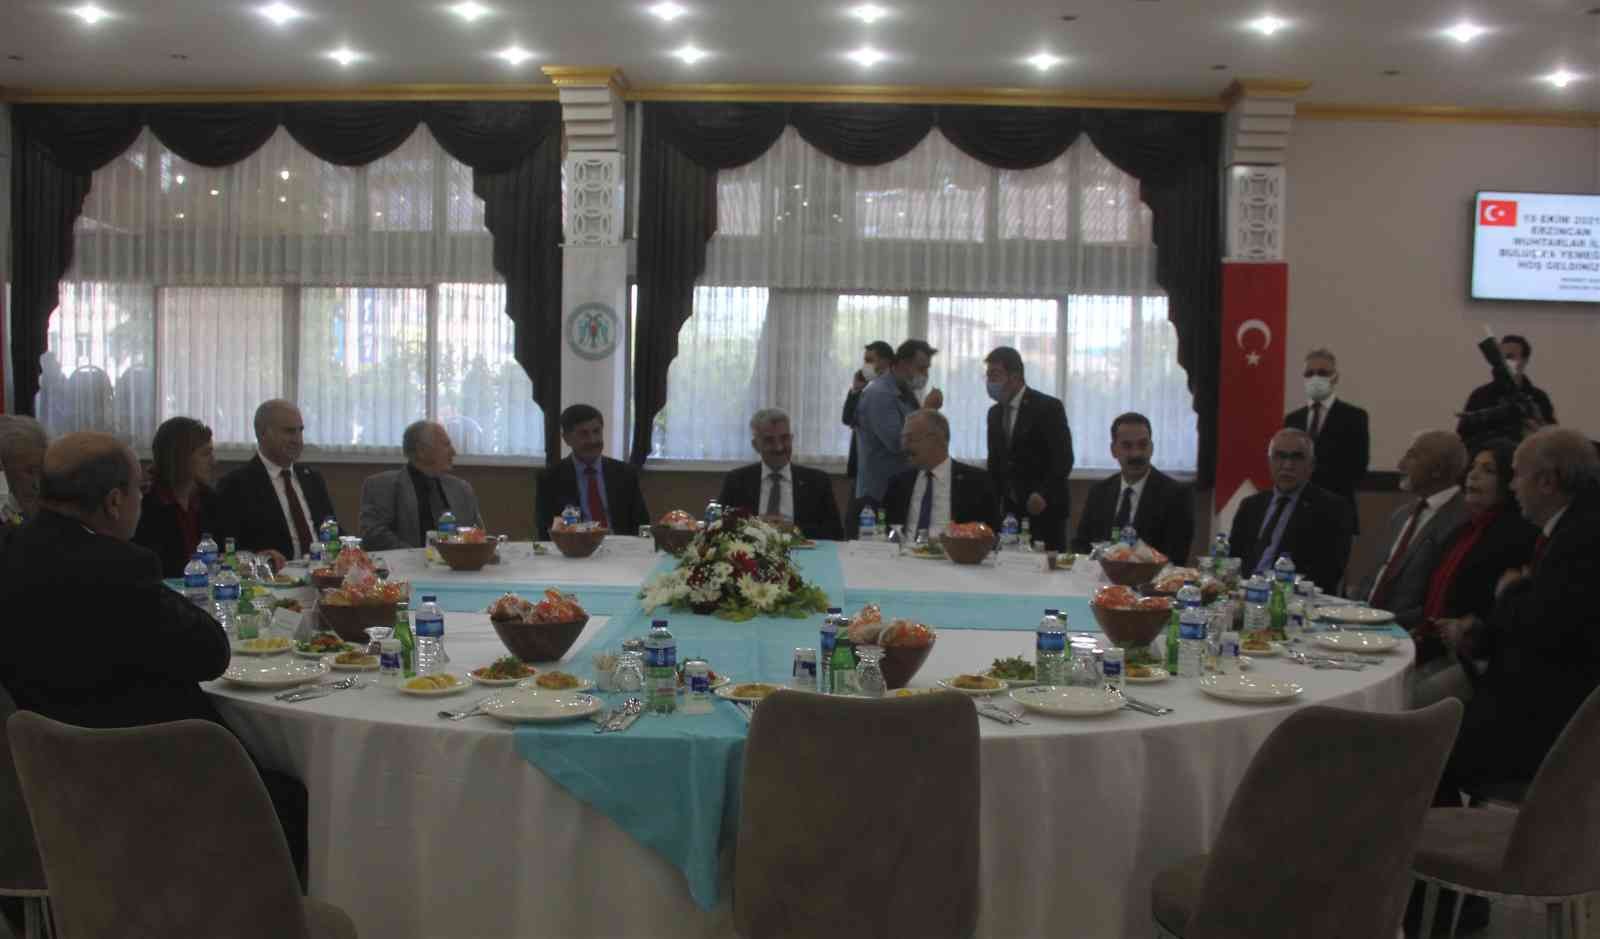 Erzincan’da 19 Ekim Muhtarlar Gününe yönelik kutlama yemeği verildi #erzincan